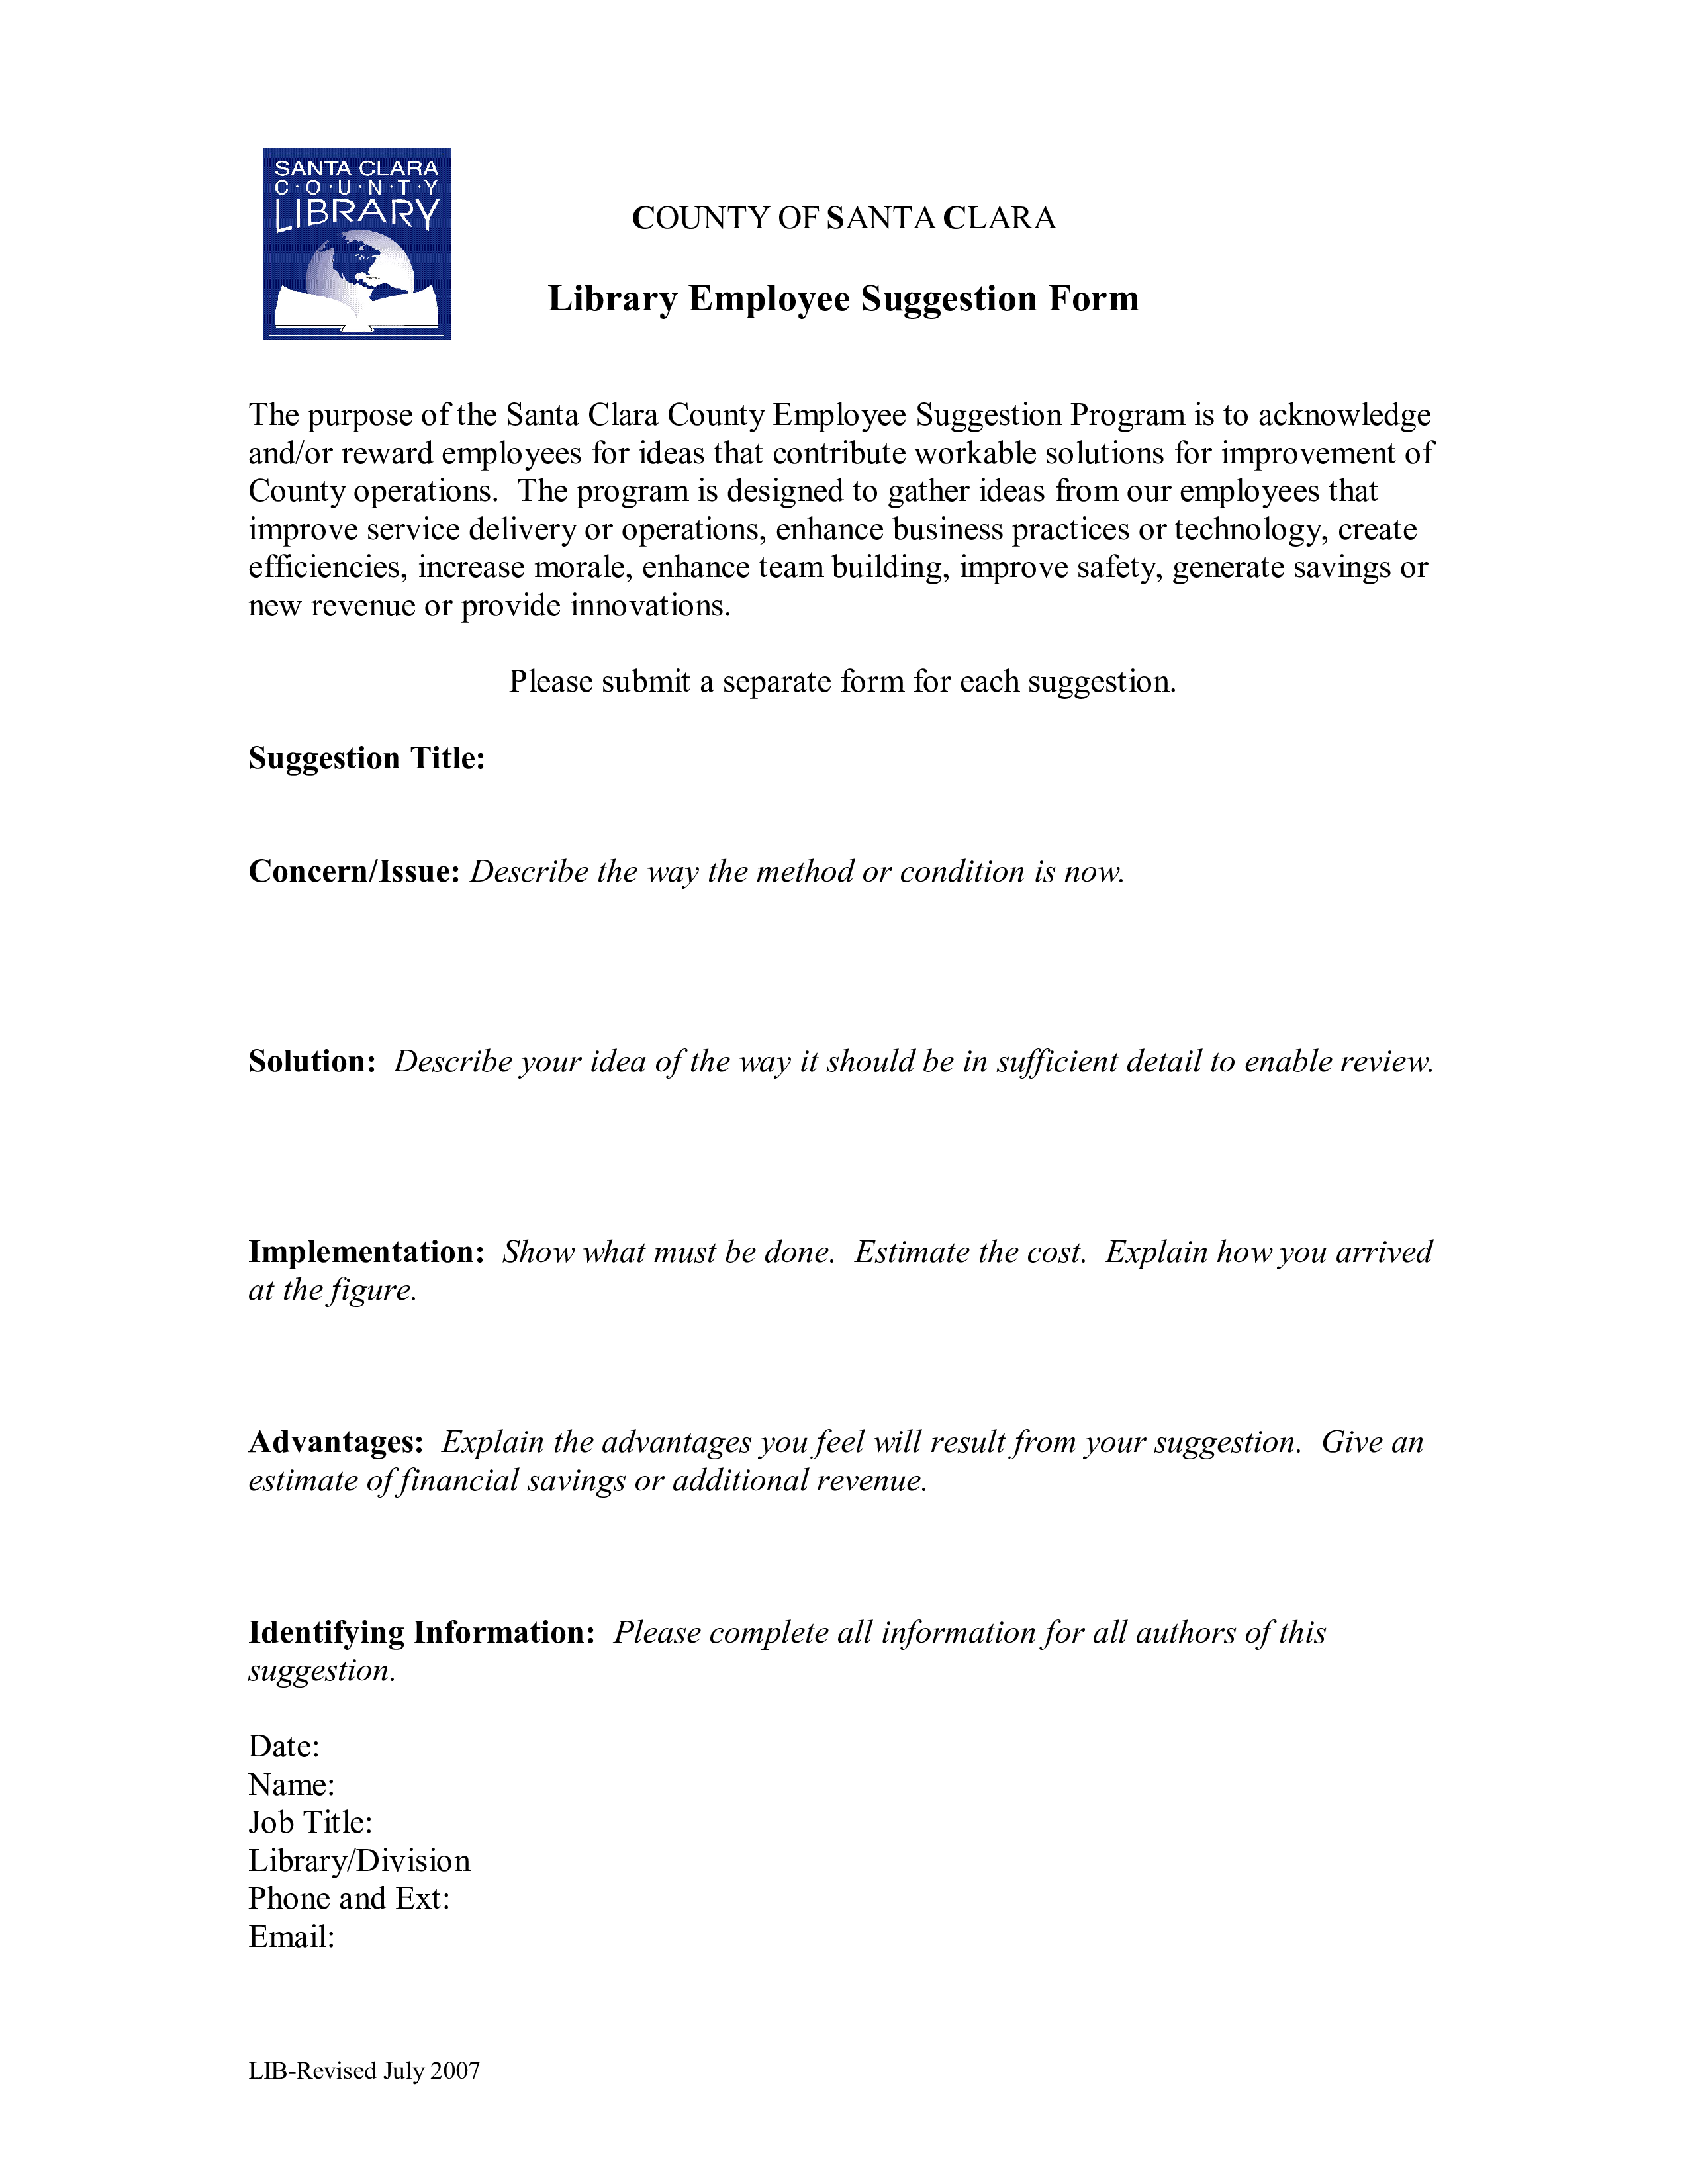 library employee suggestion form plantilla imagen principal